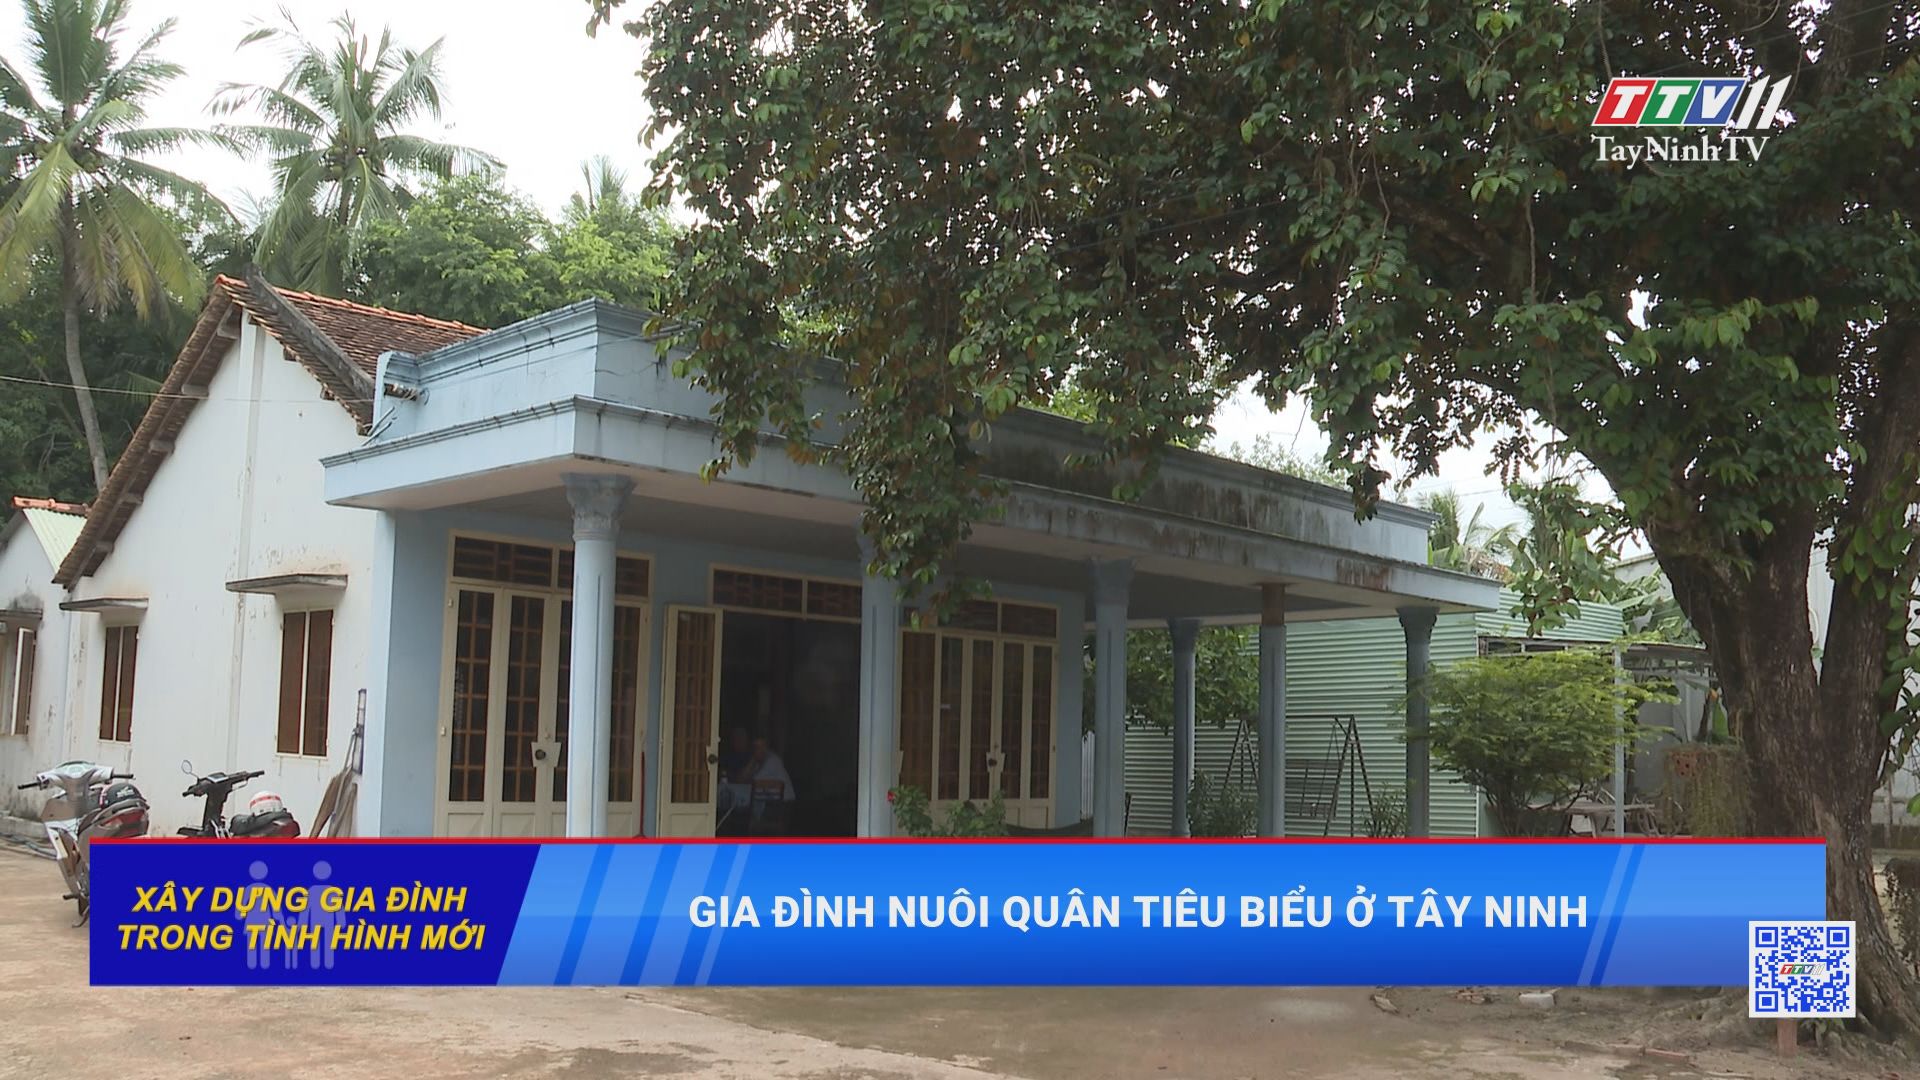 Gia đình nuôi quân tiêu biểu ở Tây Ninh | Xây dựng gia đình trong trình hình mới | TayNinhTV